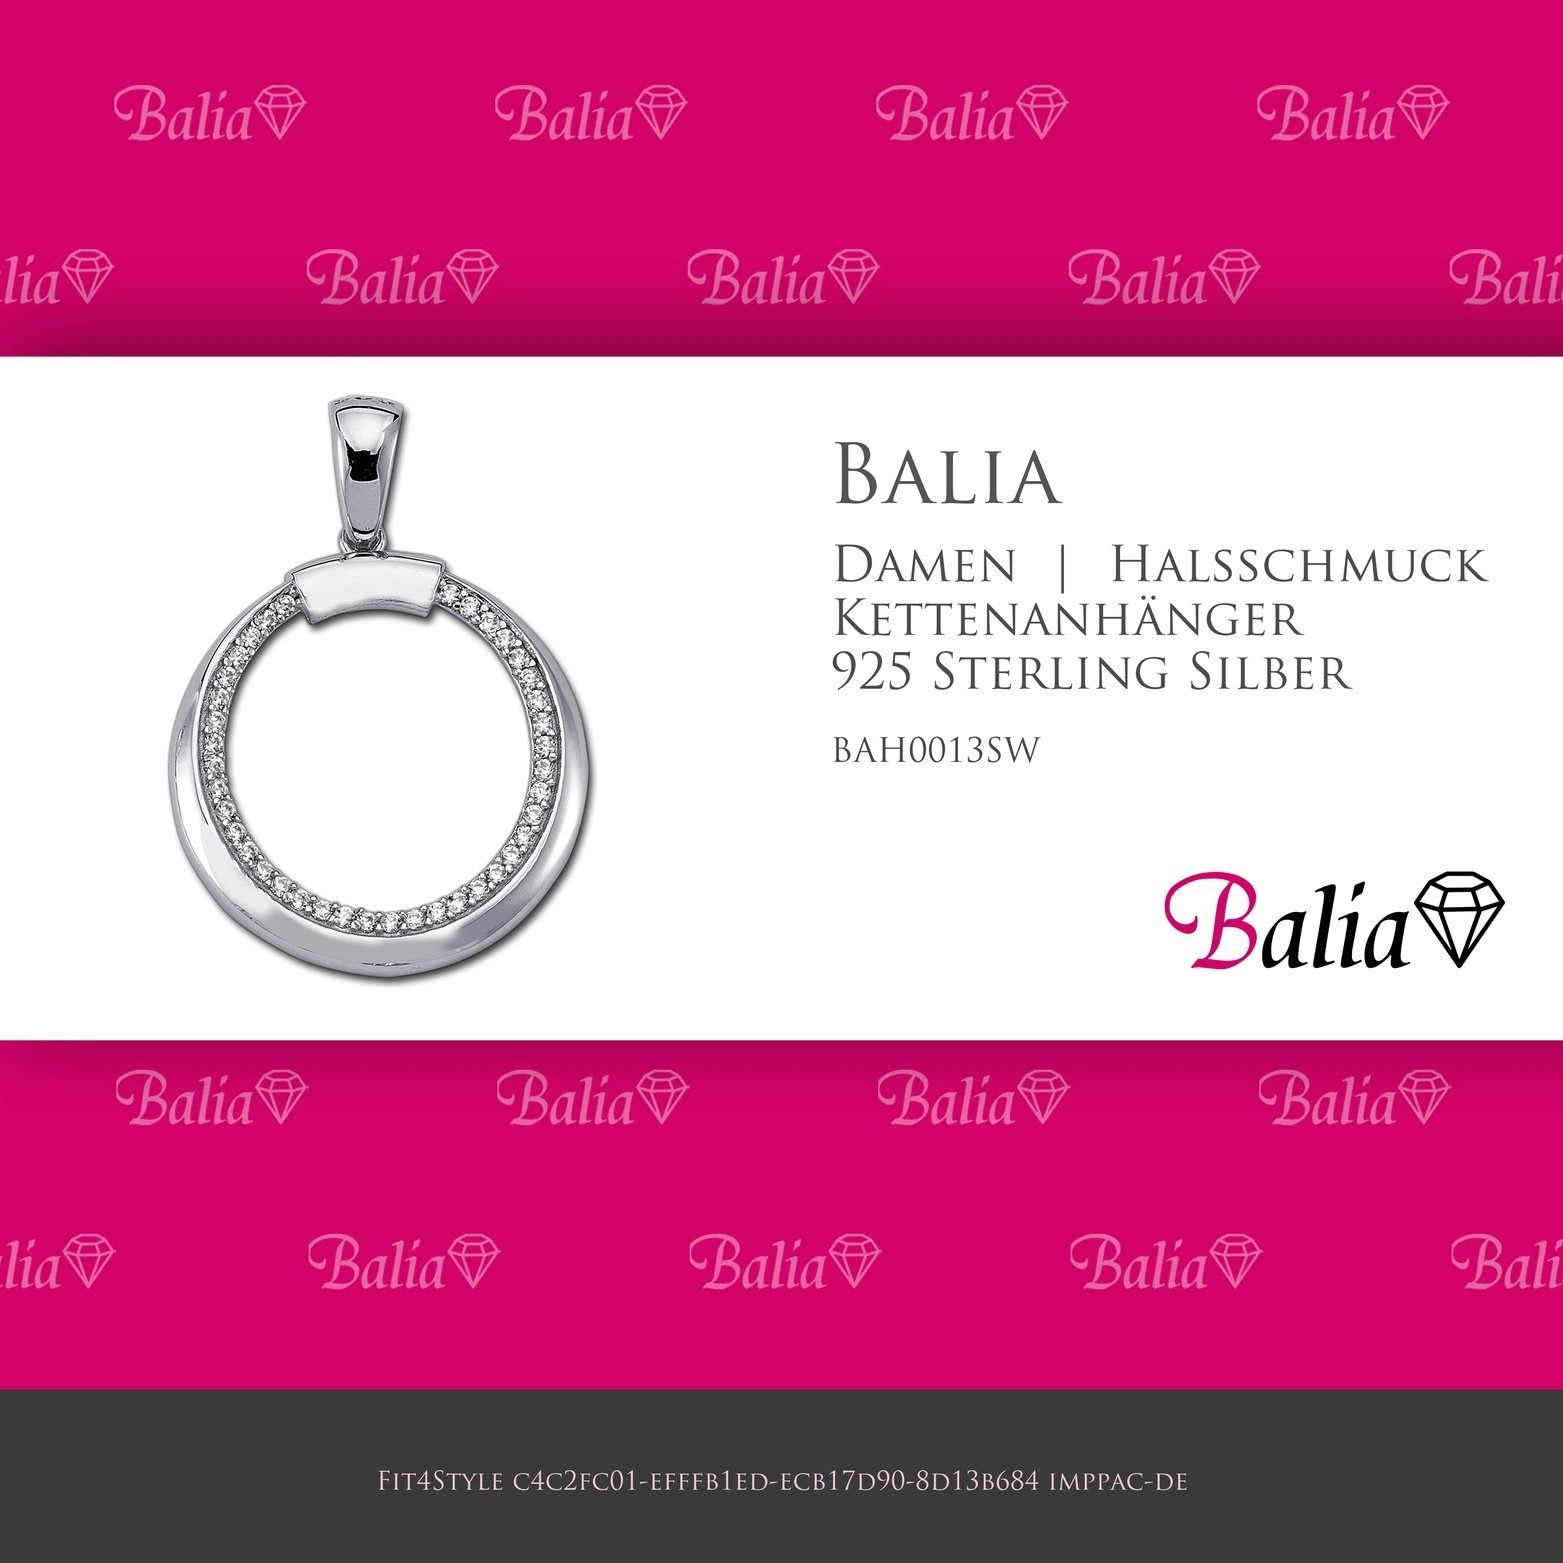 (Round) Sterling Balia 925, Kettenanhänger 3,2cm, Kettenanhänger ca. 925 Kettenanhänger für Balia Damen Silber